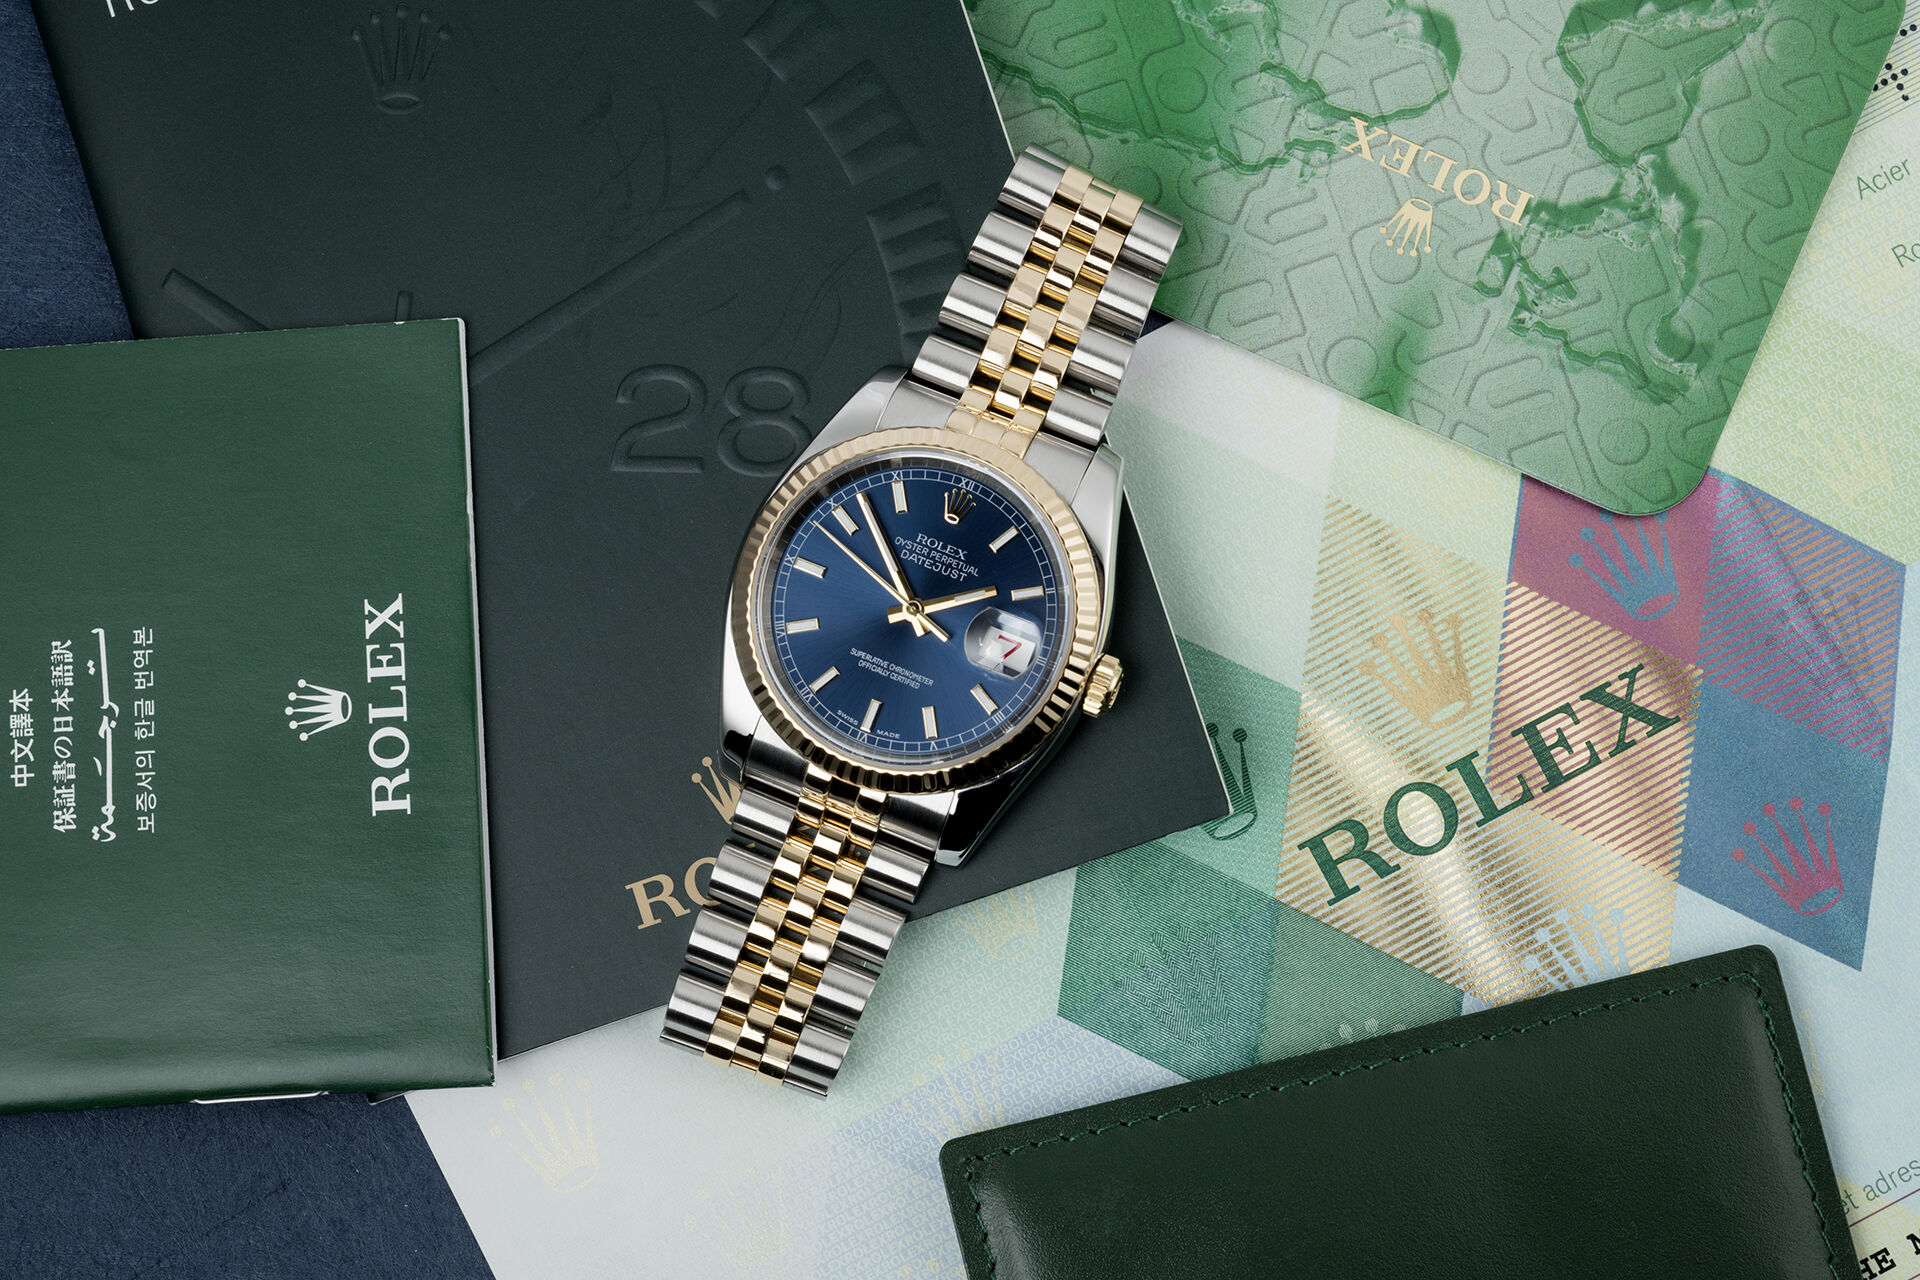 ref 116233 | Box & Certificate | Rolex Datejust